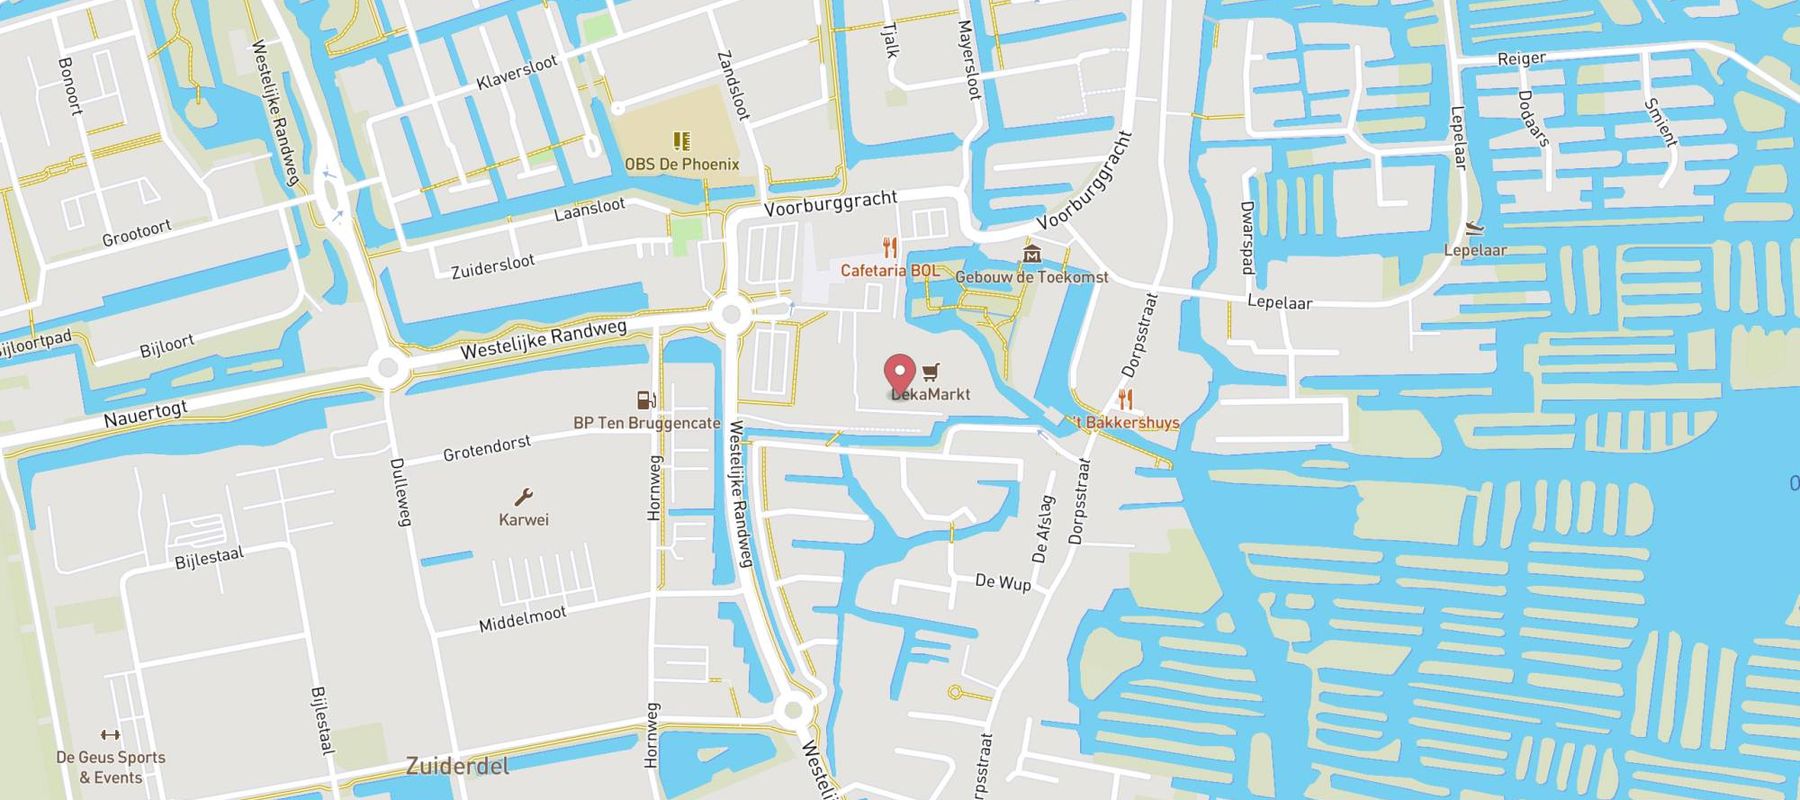 Blokker Broek Op Lange Dijk map